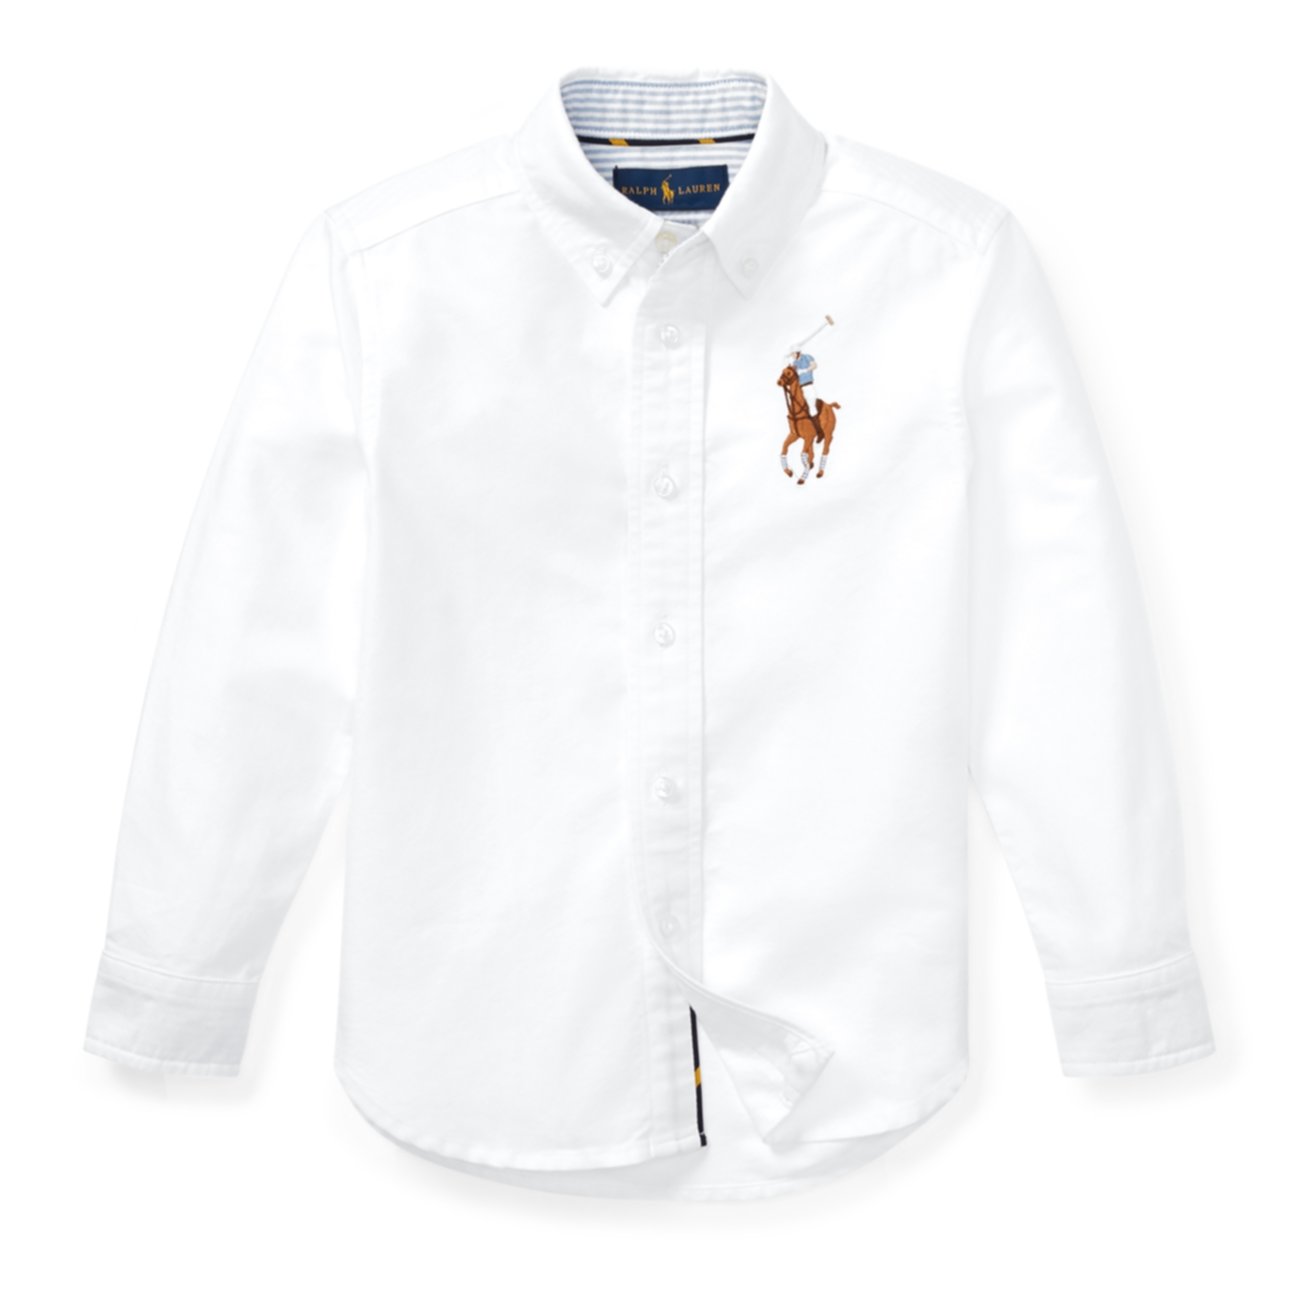 Хлопковая оксфордская рубашка Big Pony Ralph Lauren